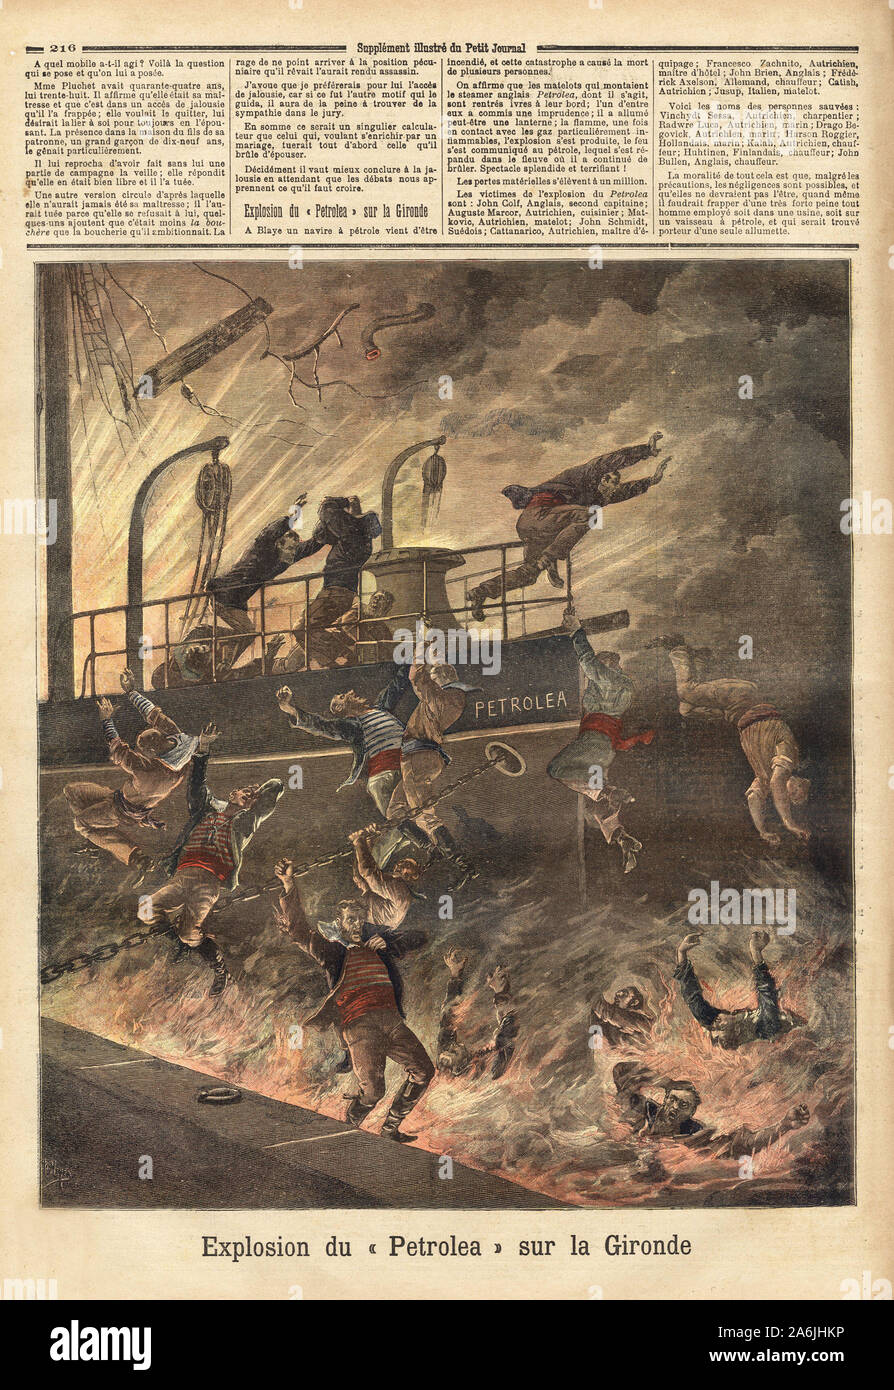 L'esplosione du 'Petrolea', il sistema di cottura a vapore anglais transportant du Petrole, a Blaye, sur la Gironde. Il rotocalco in "Le Petit Journal' 4/06/1892. Collezione de . Foto Stock